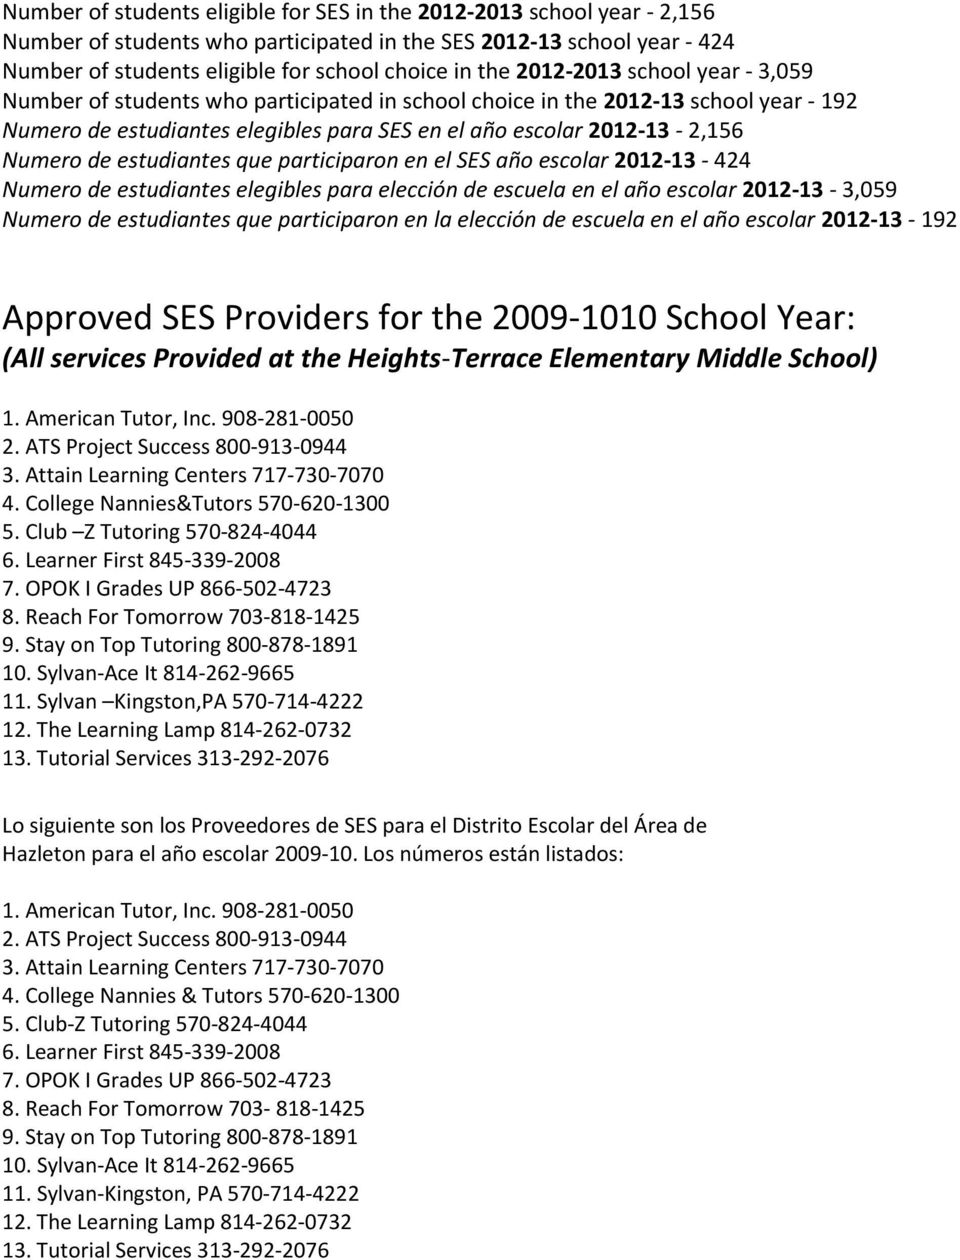 estudiantes que participaron en el SES año escolar 2012-13 424 Numero de estudiantes elegibles para elección de escuela en el año escolar 2012-13 3,059 Numero de estudiantes que participaron en la